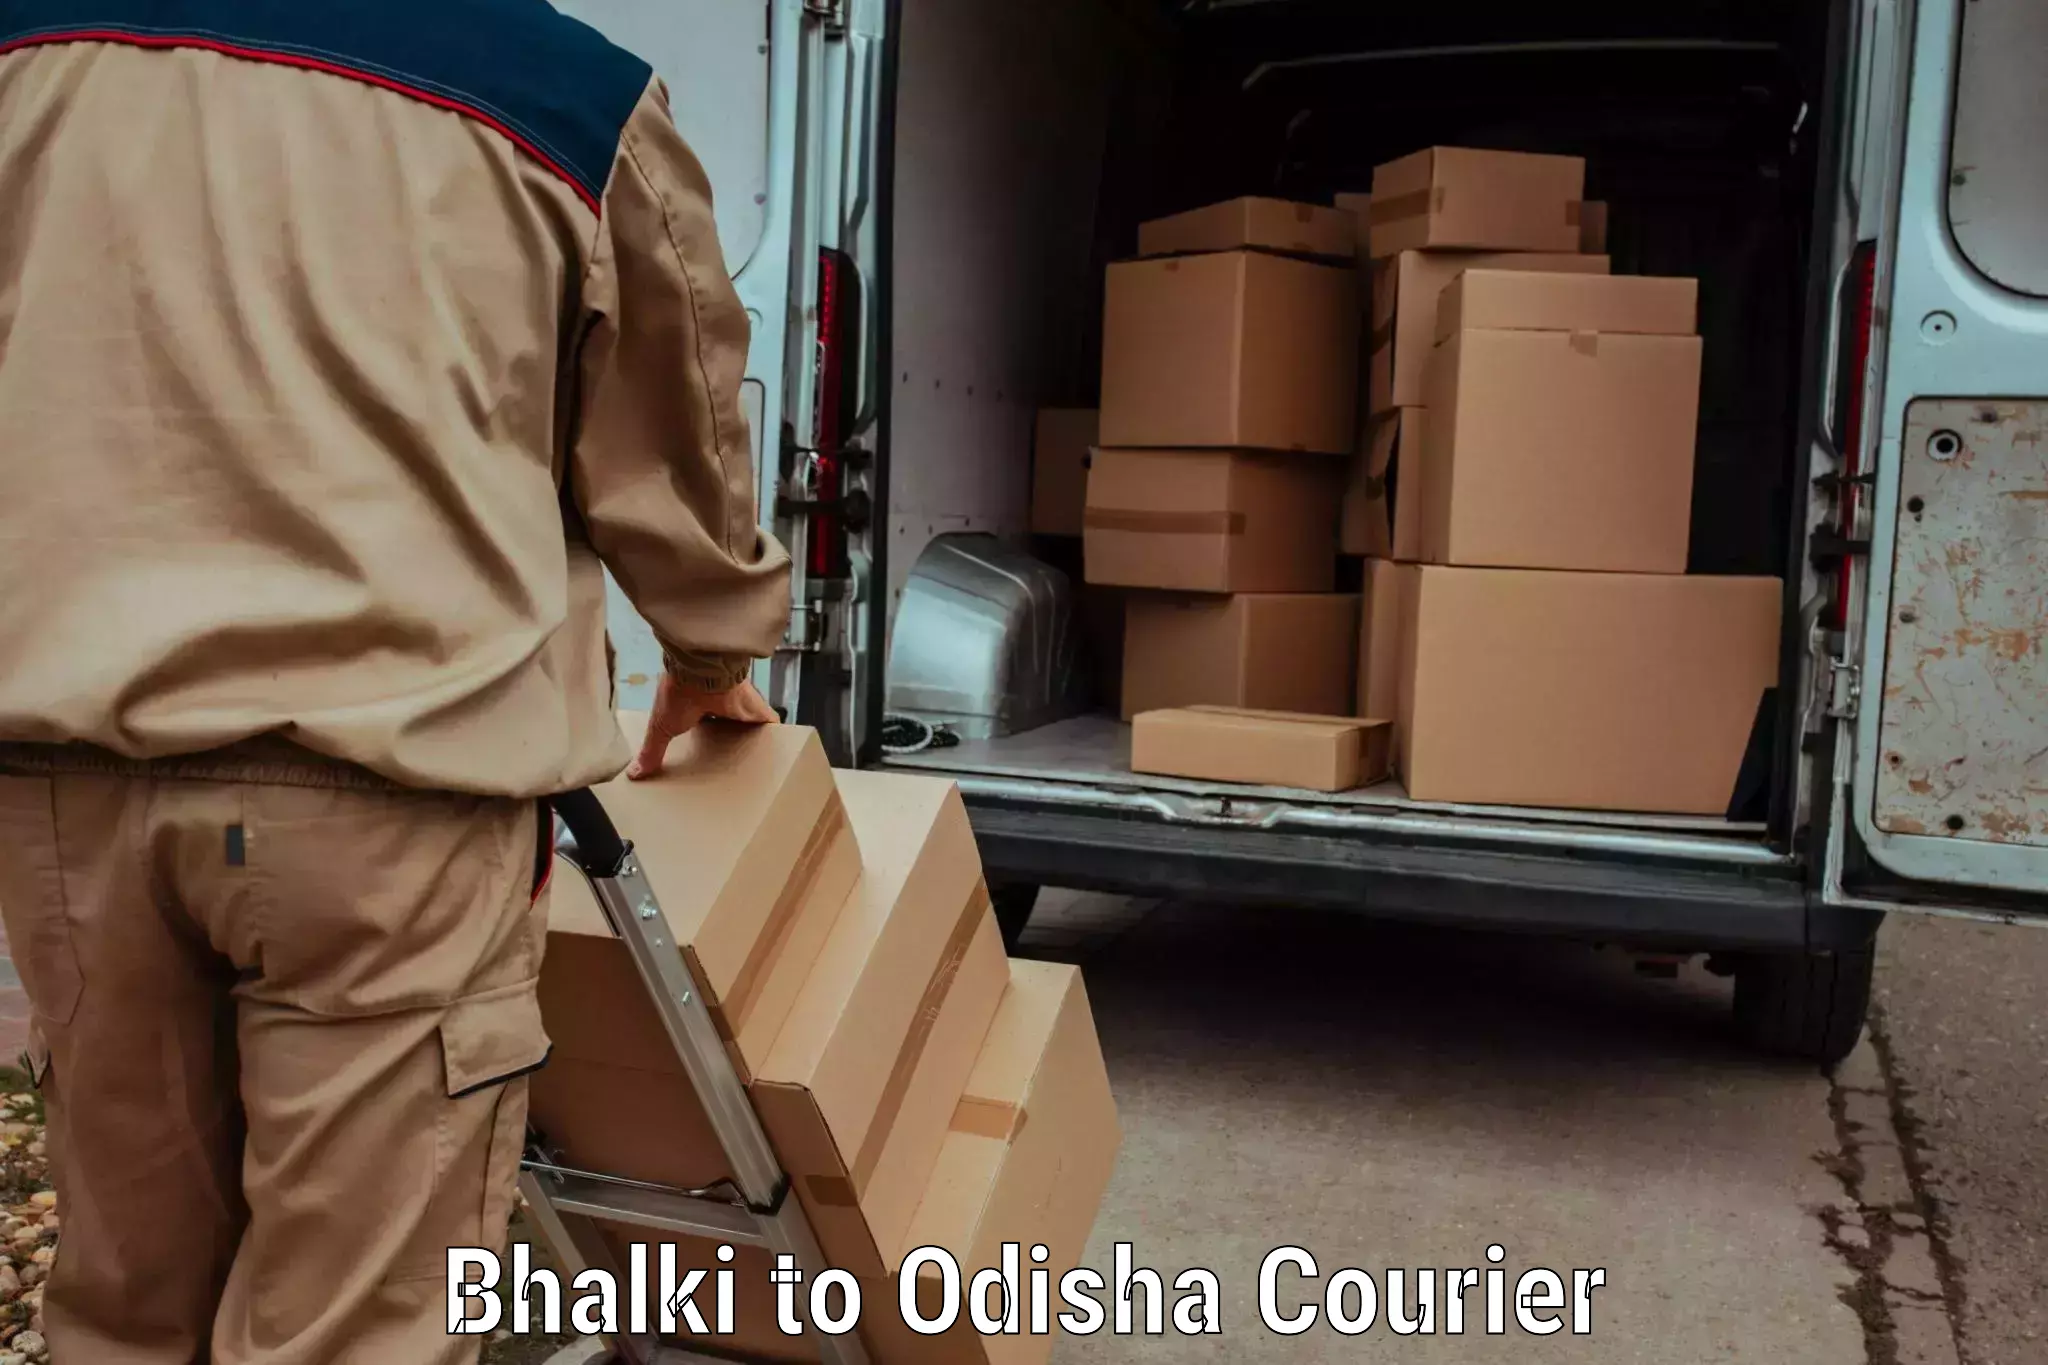 High-speed parcel service Bhalki to Basudebpur